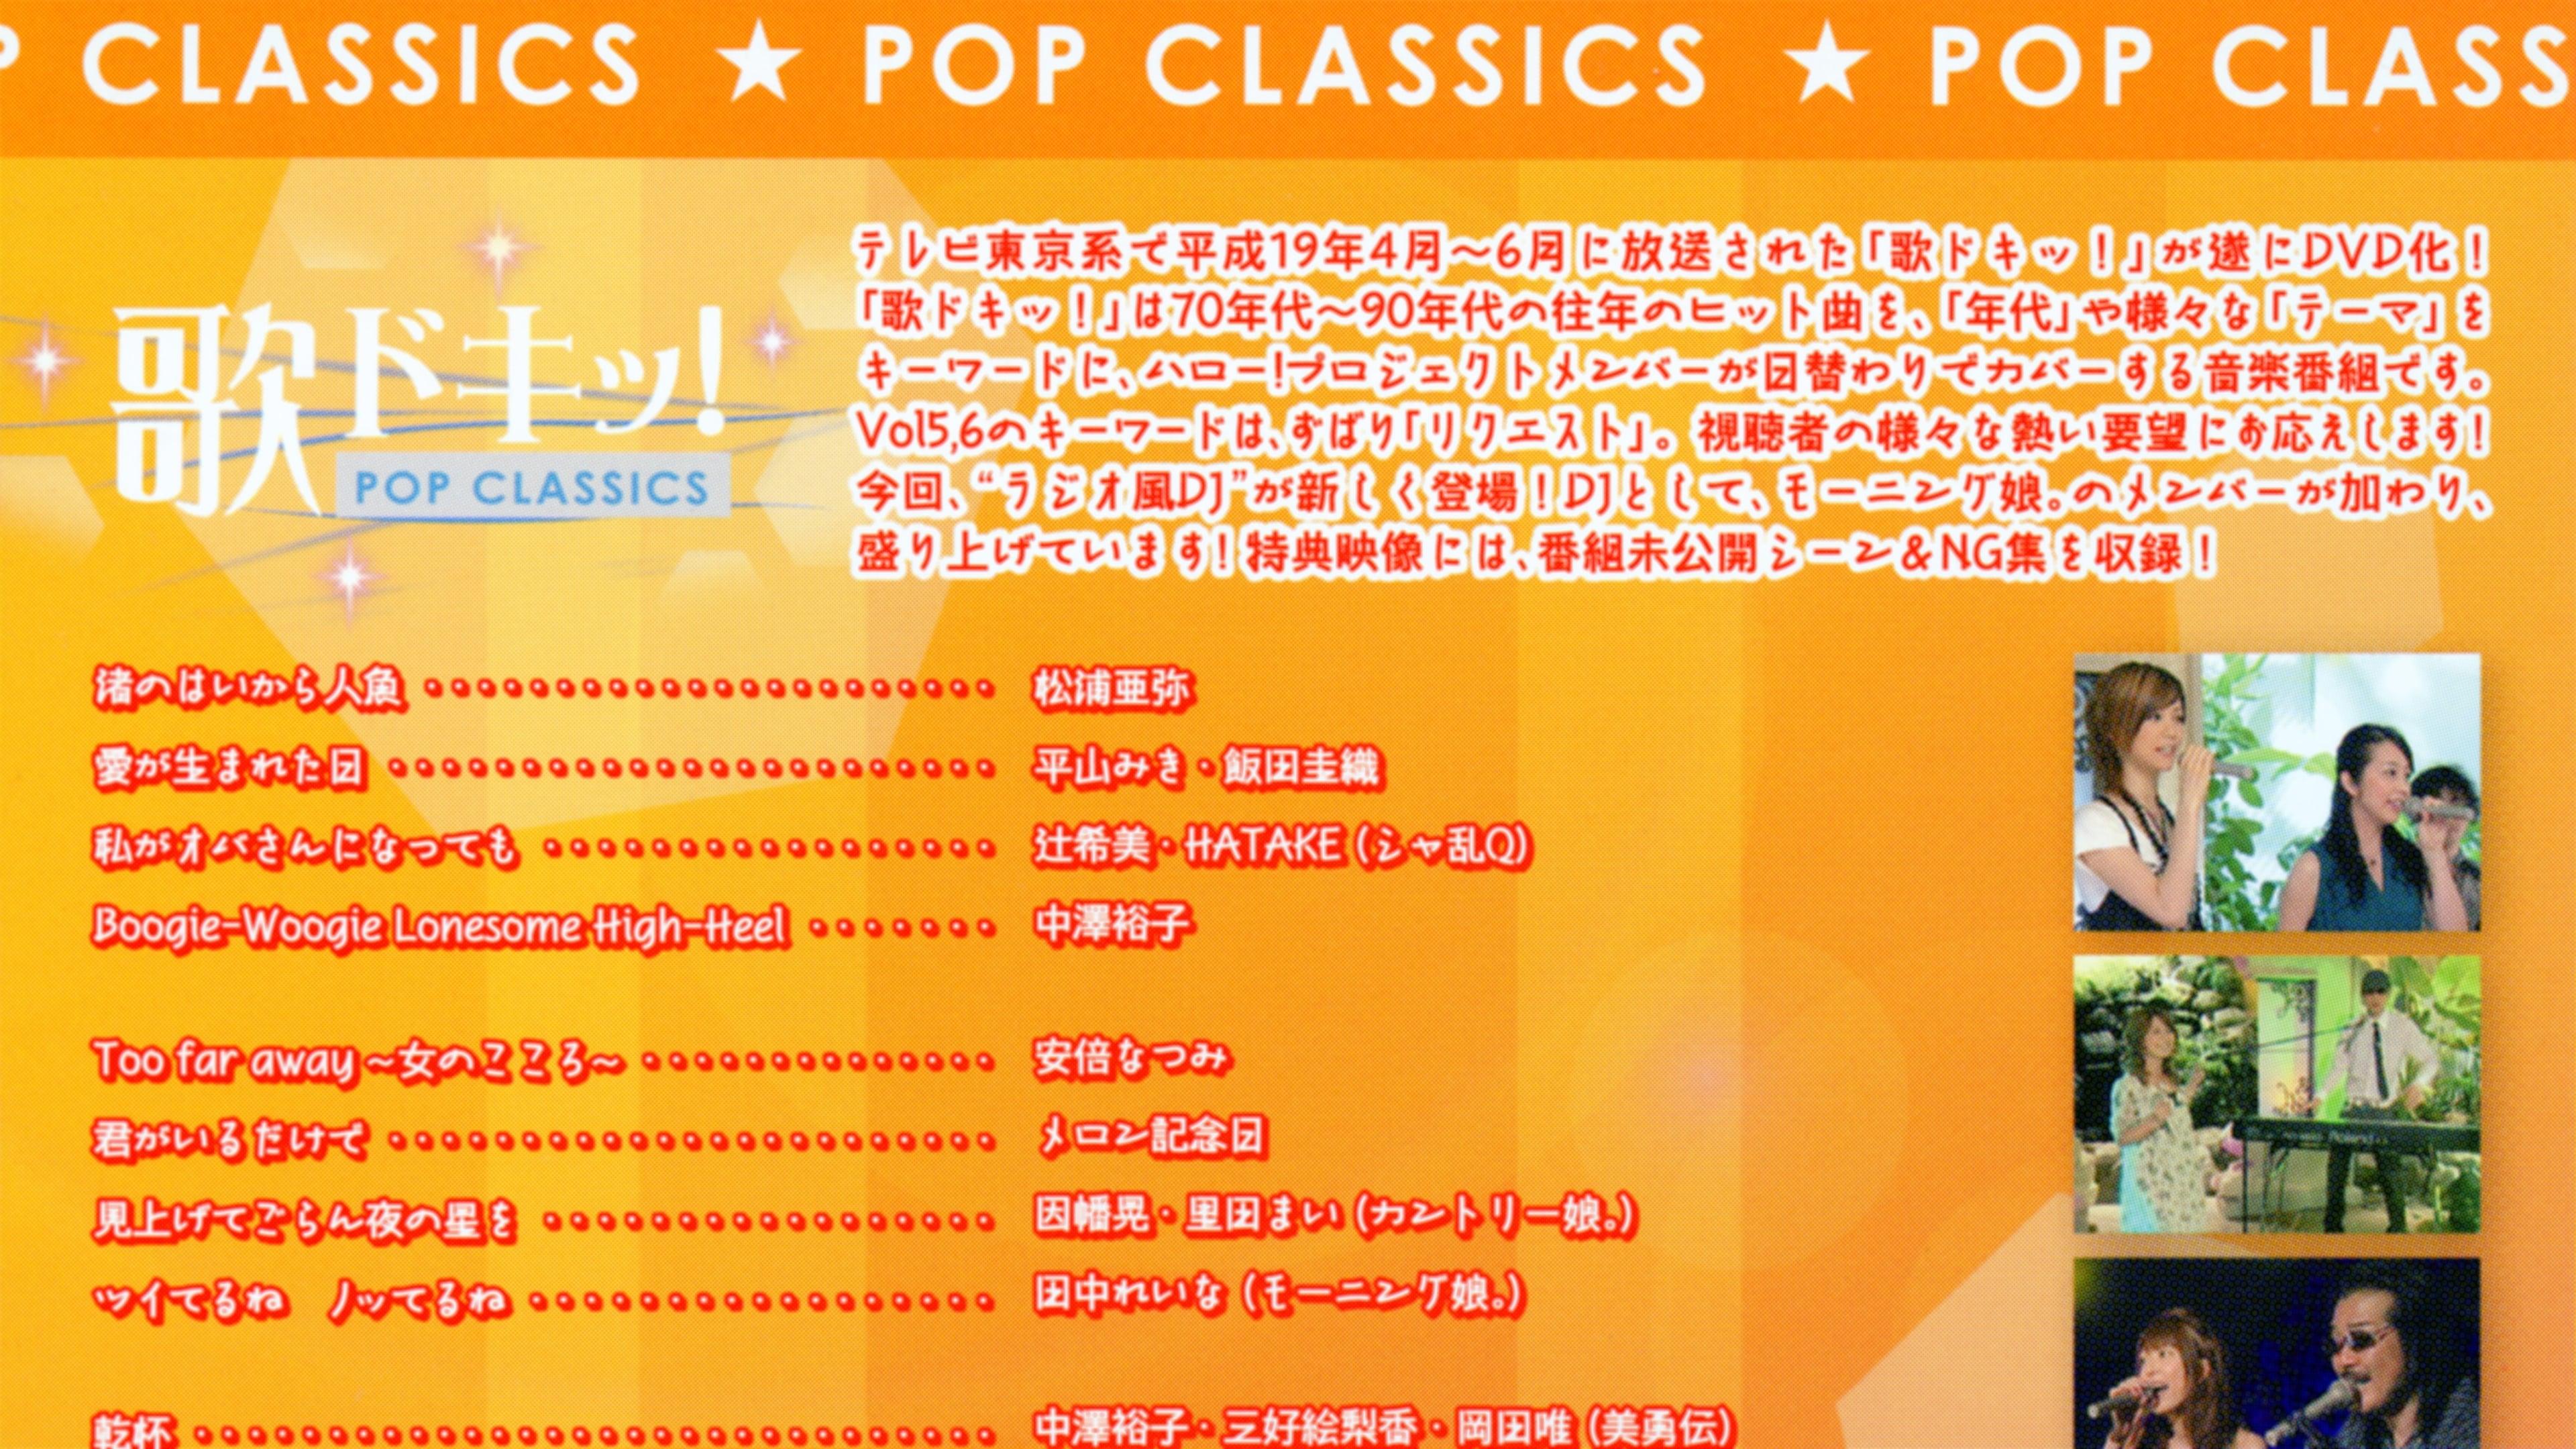 Uta Doki! Pop Classics Vol.6 backdrop